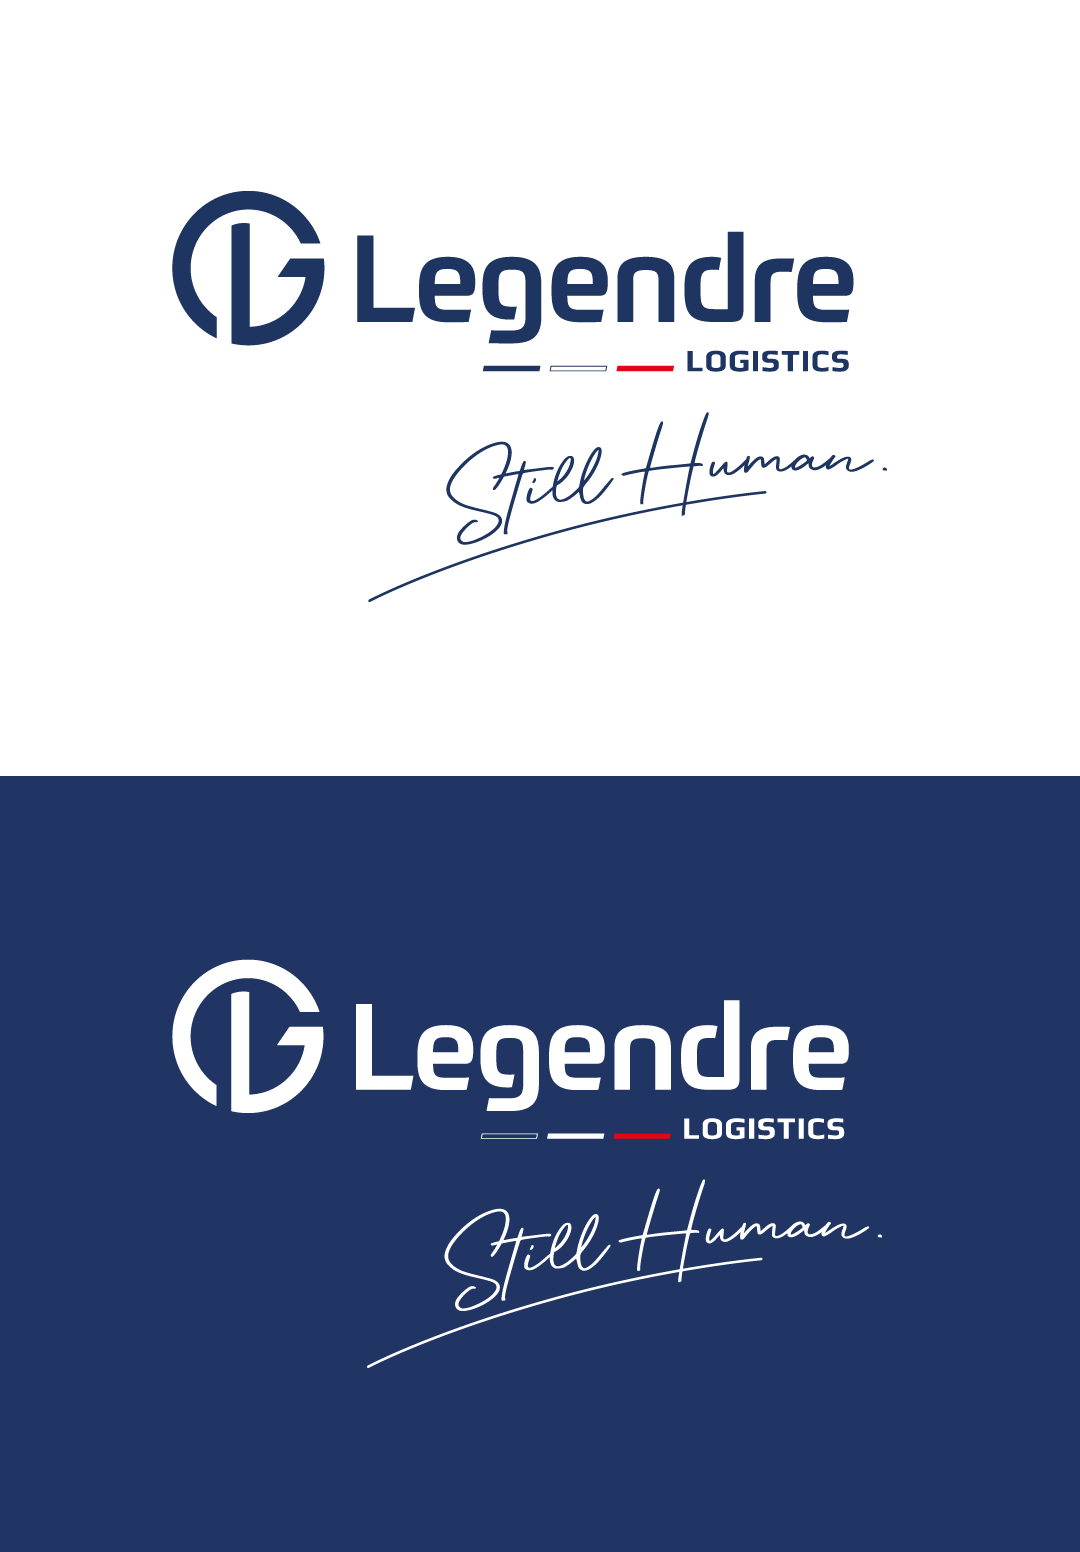 New logo Legendre logistics